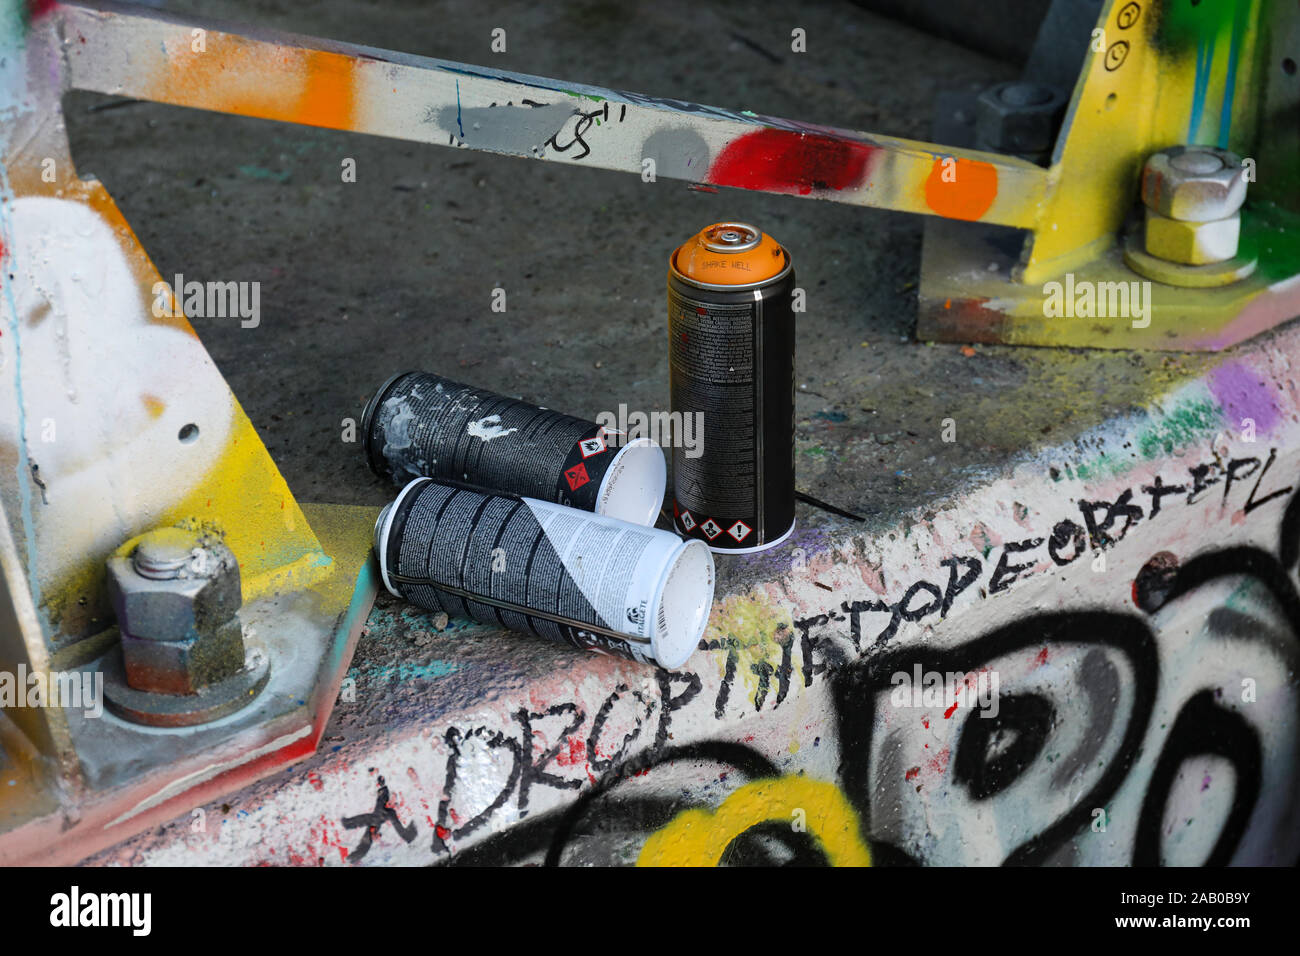 Artisti Di Bombolette Spray Immagini e Fotos Stock - Alamy